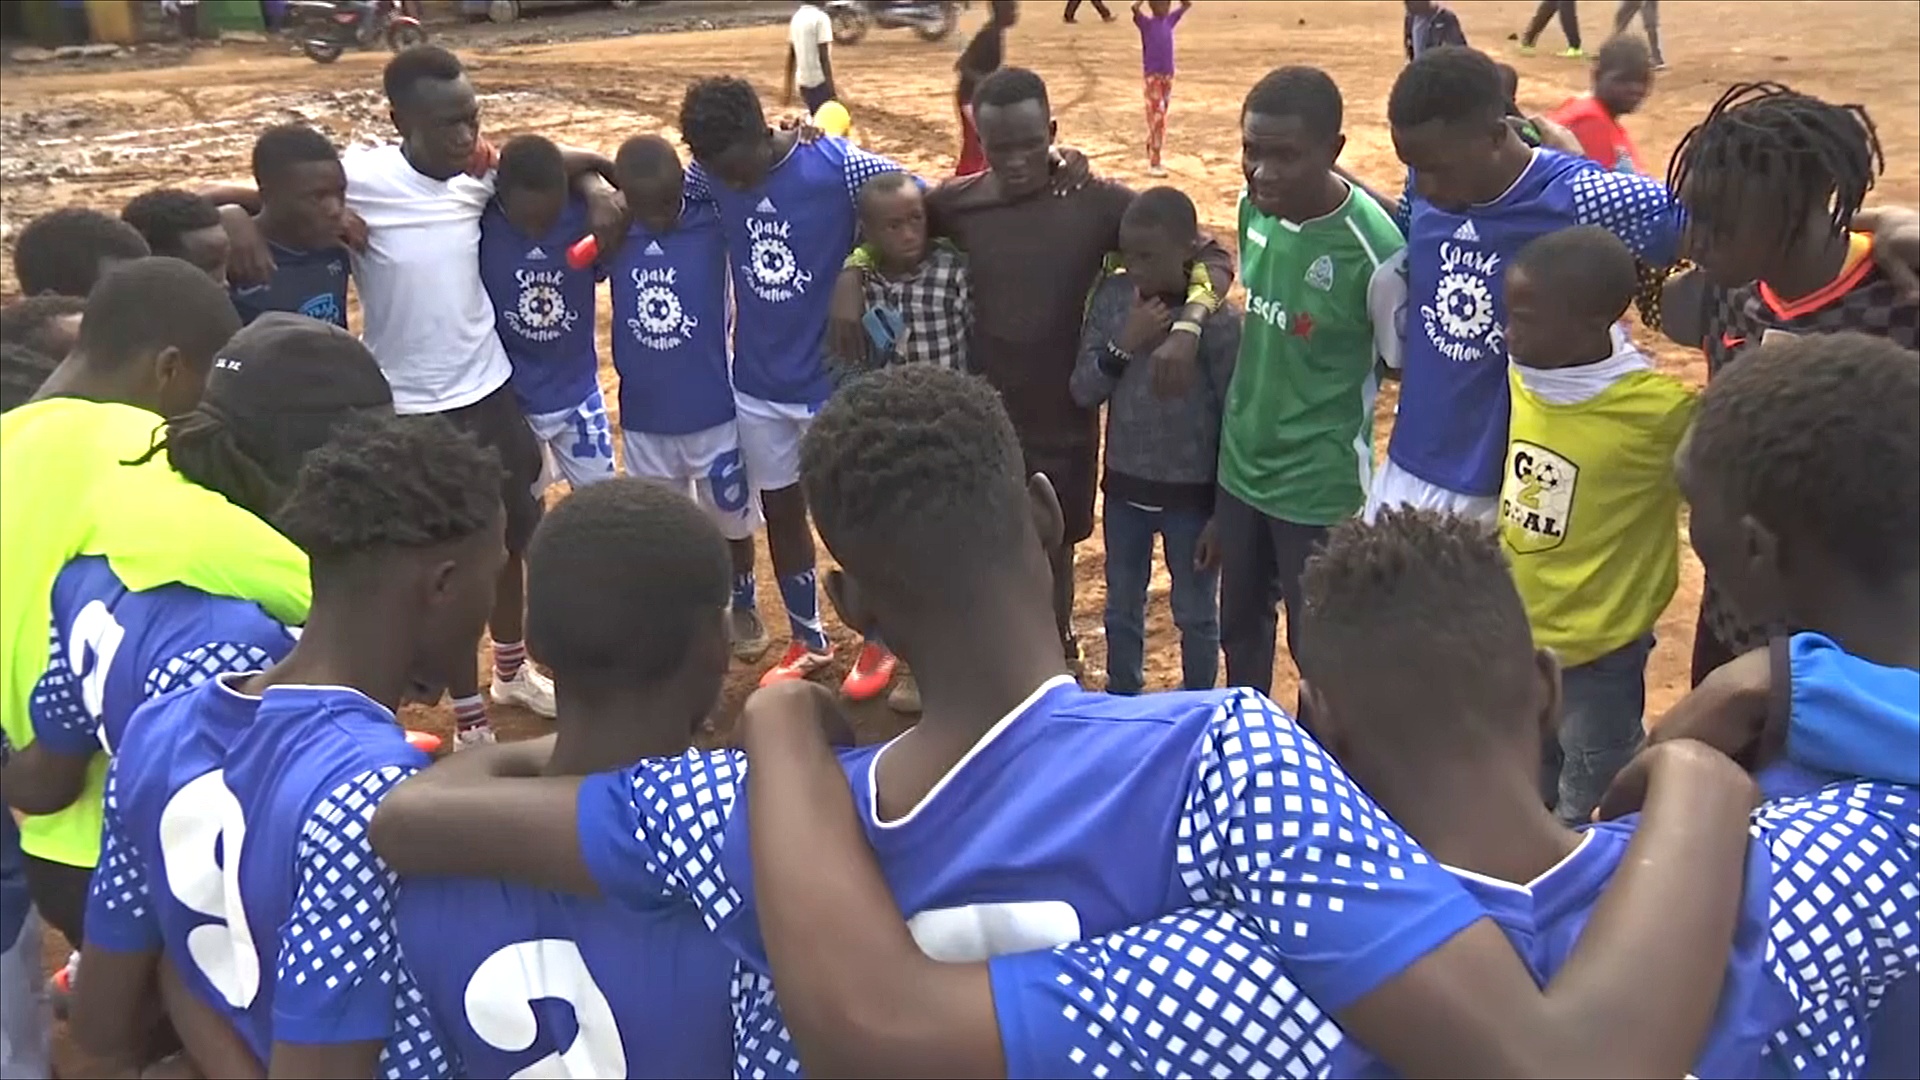 Футбол спасает кенийцев от наркотиков и преступности